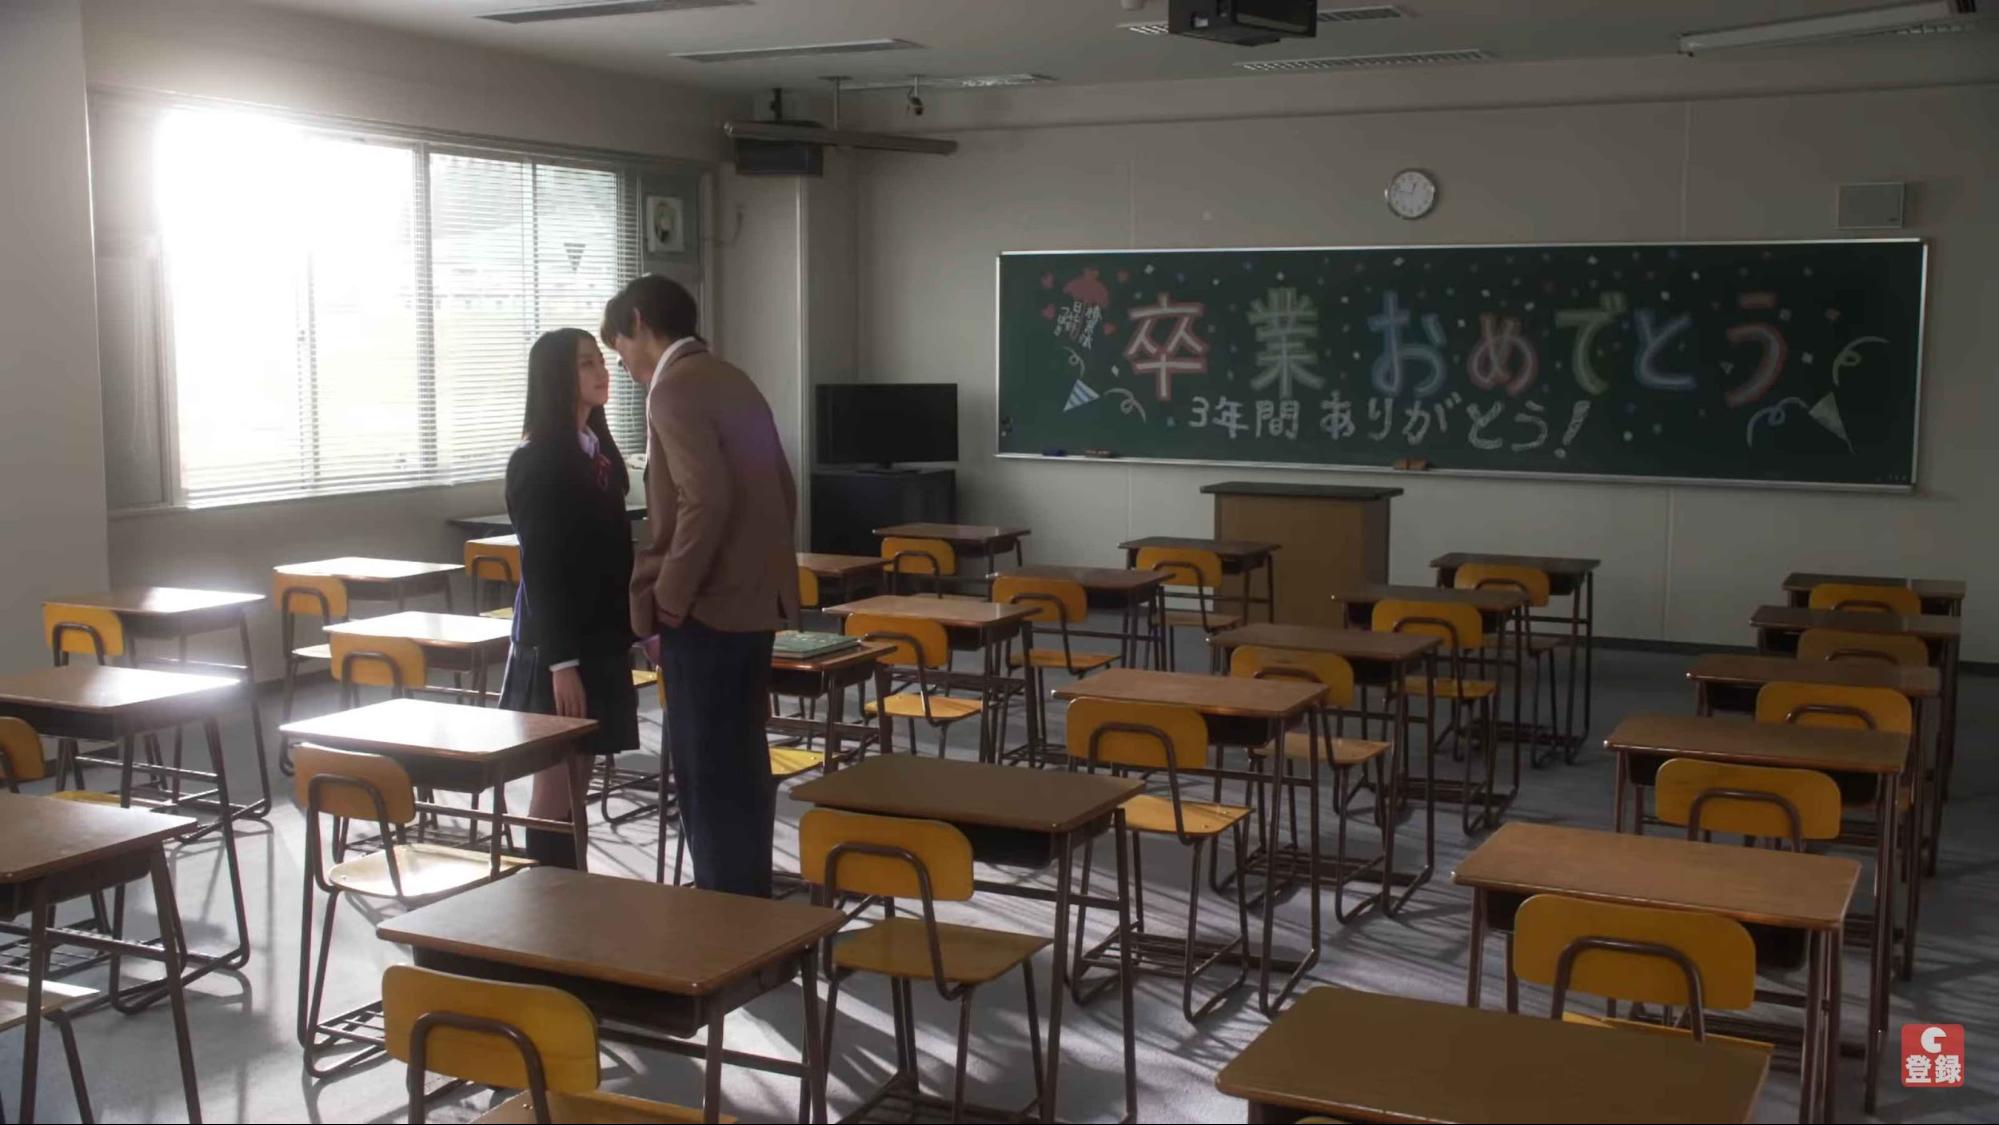 Japanese high school romance movies - Kyou Koi wo Hajimemasu